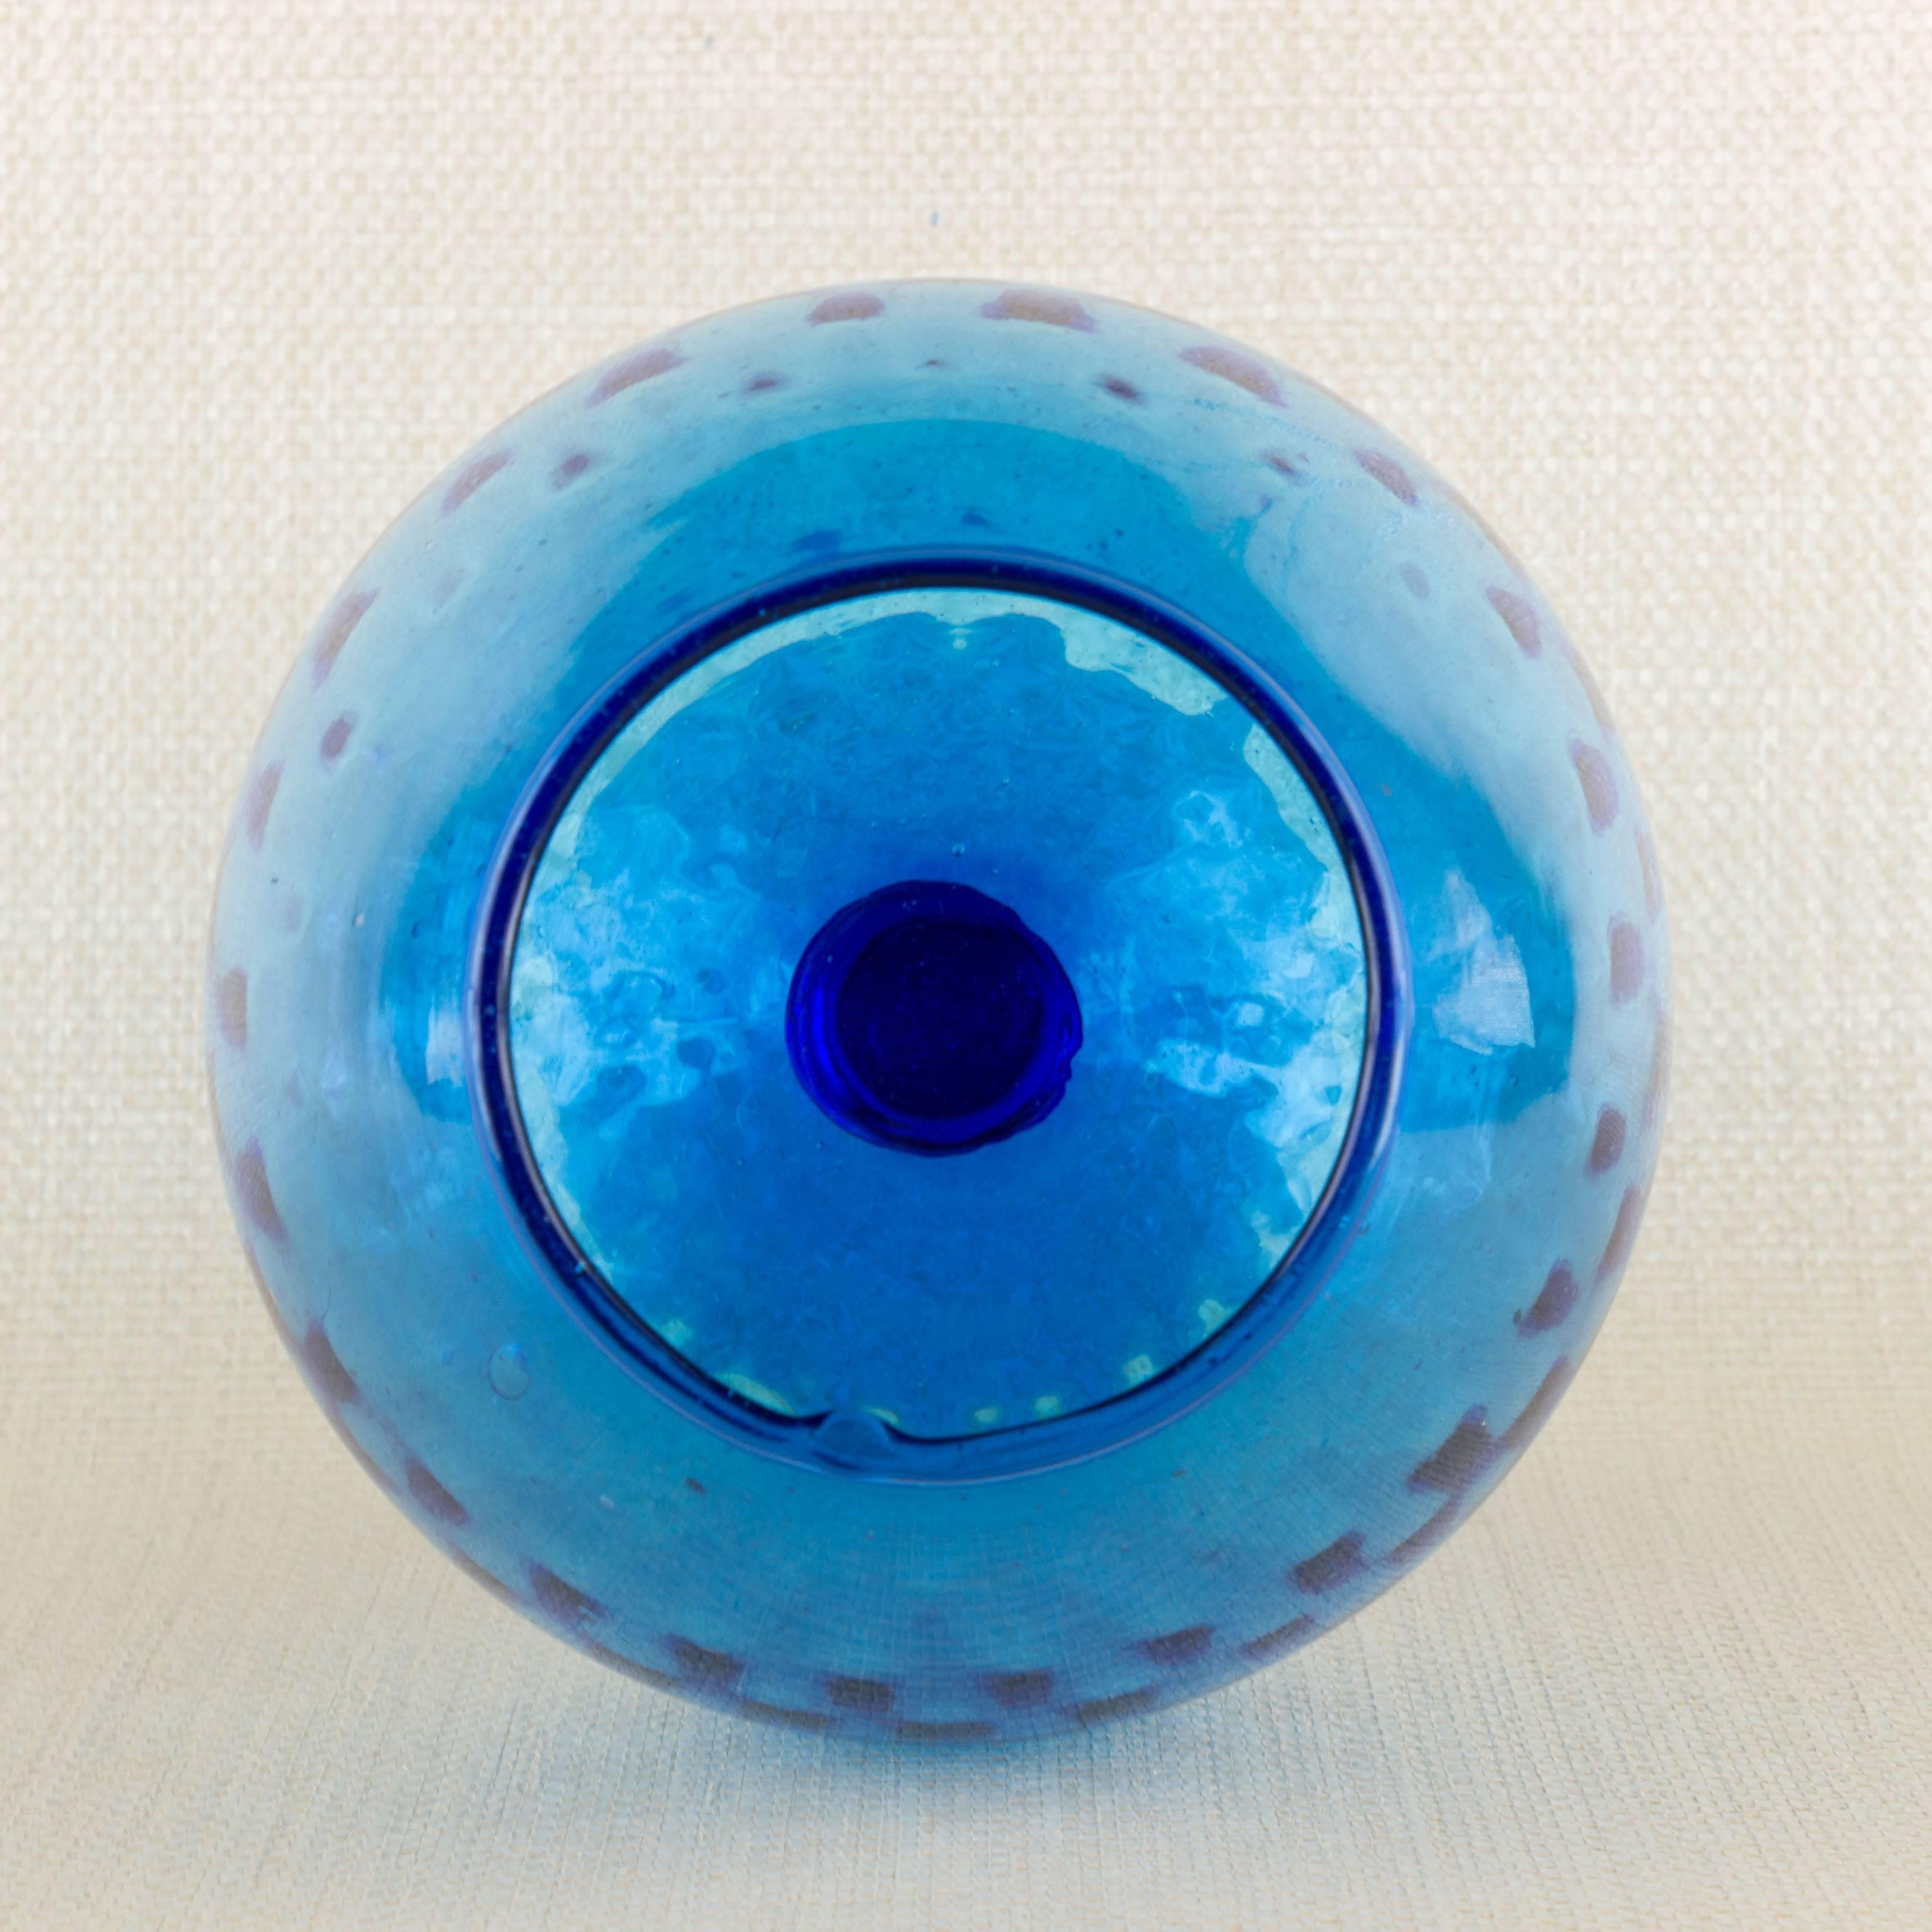 Blaues Glas mit Stiel im Empoli-Stil. Sehr guter Zustand.

Ref #: H1117-03

Abmessungen: 9 